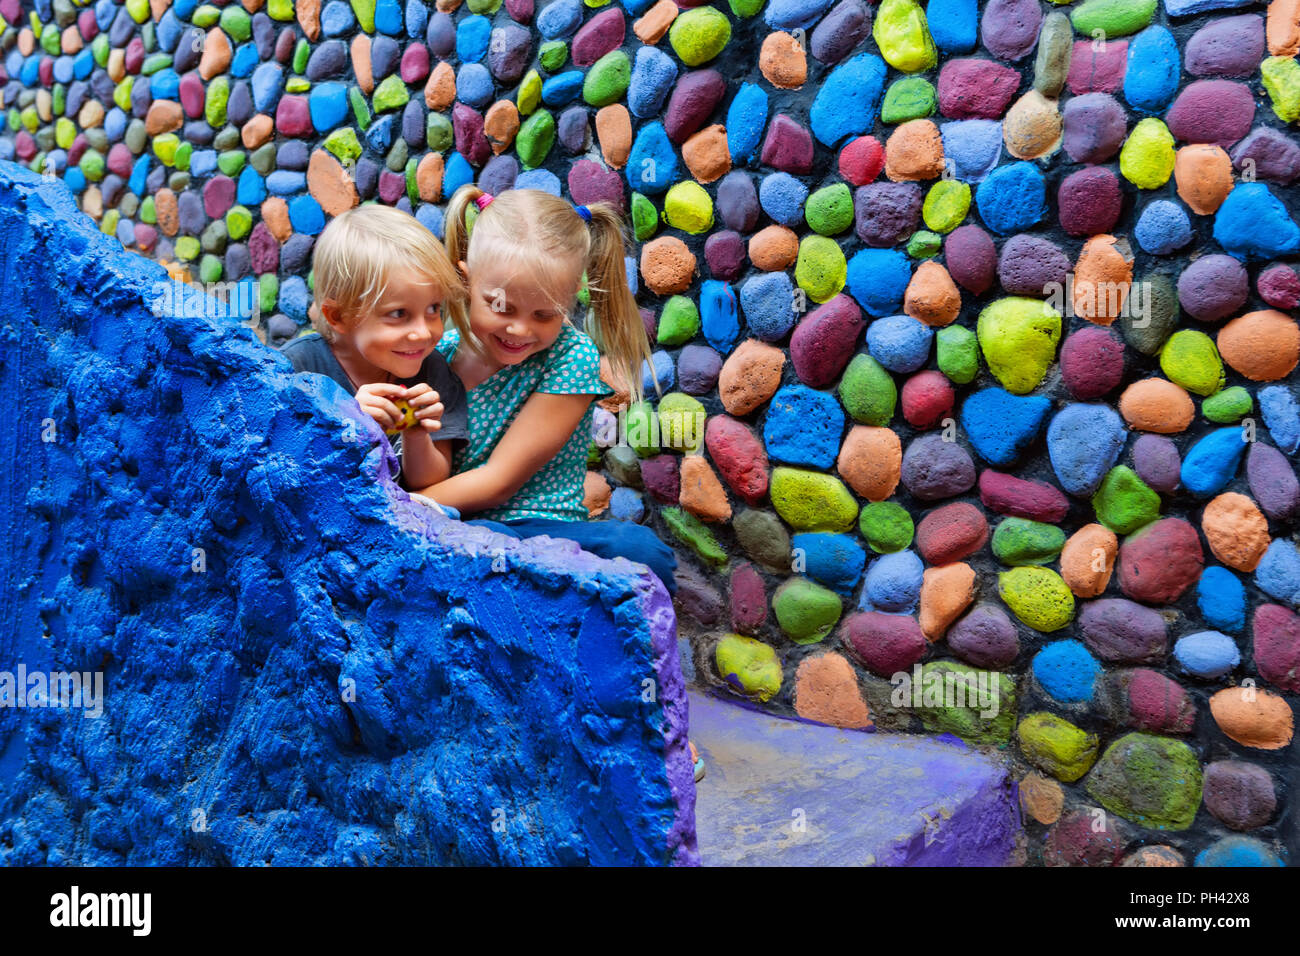 Deux enfants heureux s'amusent ensemble assis dehors sur les marches en pierre colorée d'accueil. Playful girl hug rire jeune frère. Vie de voyage, randonnée pédestre ci Banque D'Images